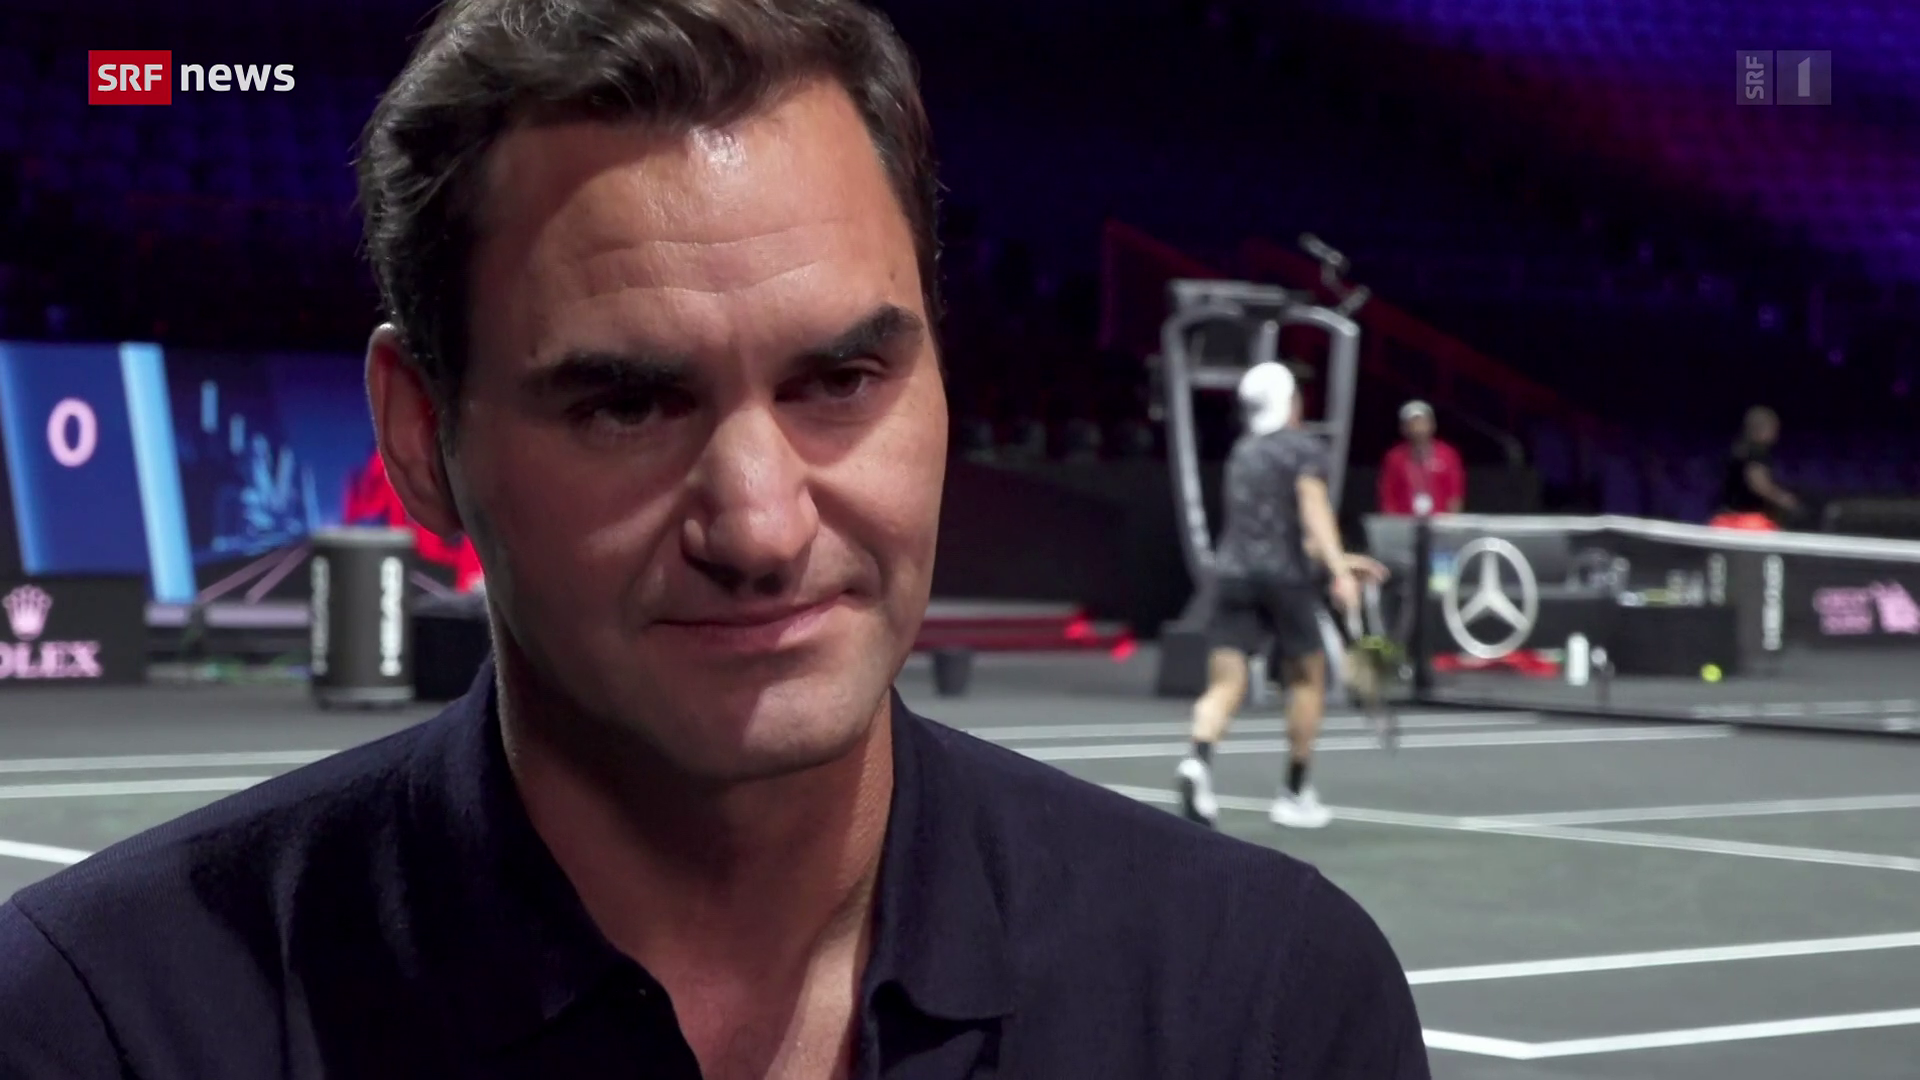 Tagesschau - Roger Federer zu seinem Rücktritt